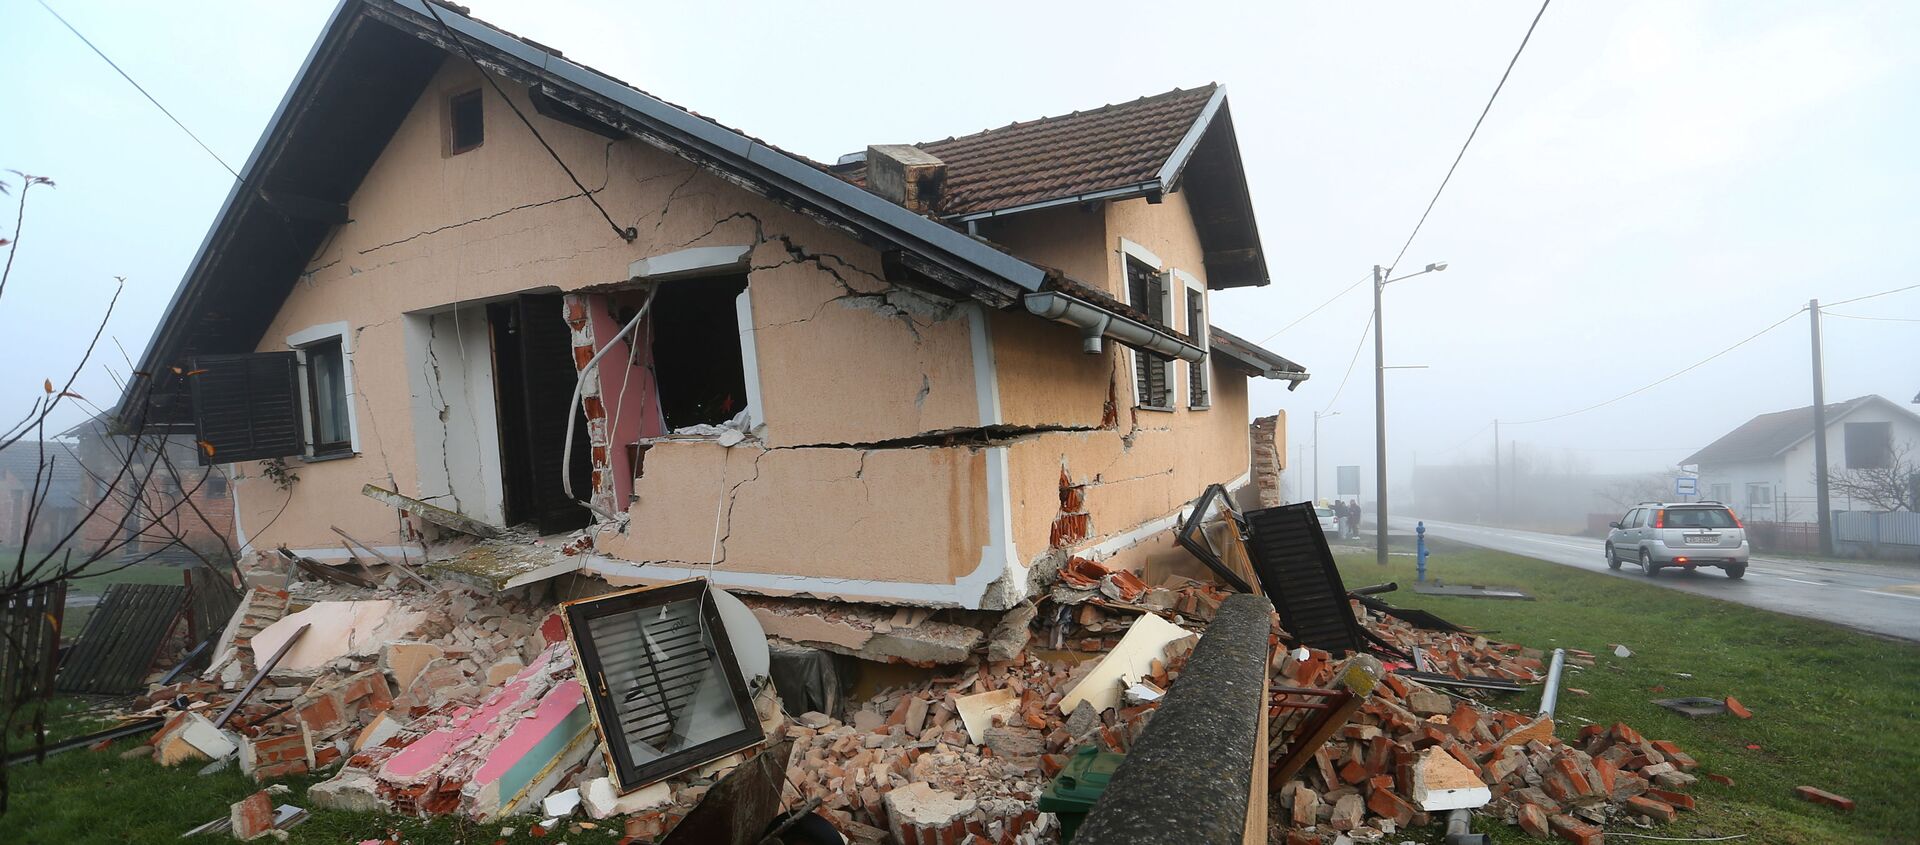 Рушена кућа после земљотреса - Sputnik Србија, 1920, 30.12.2020